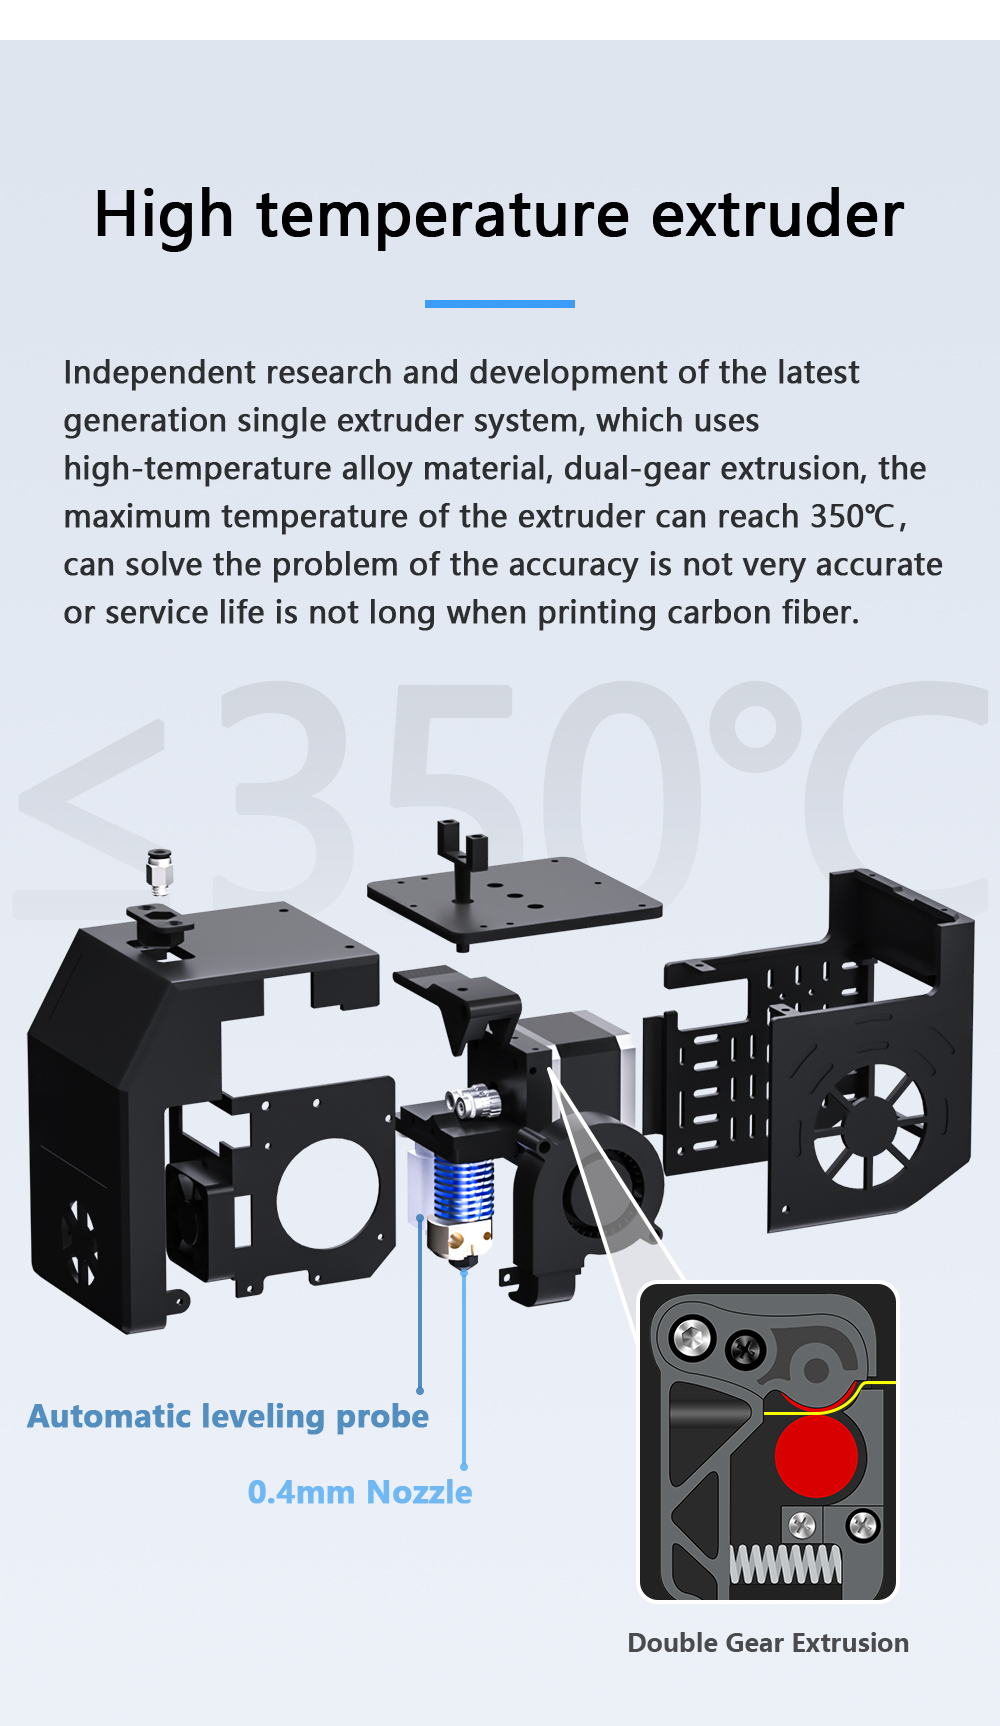 Impresora 3D de grado industrial QIDI TECH X-CF Pro